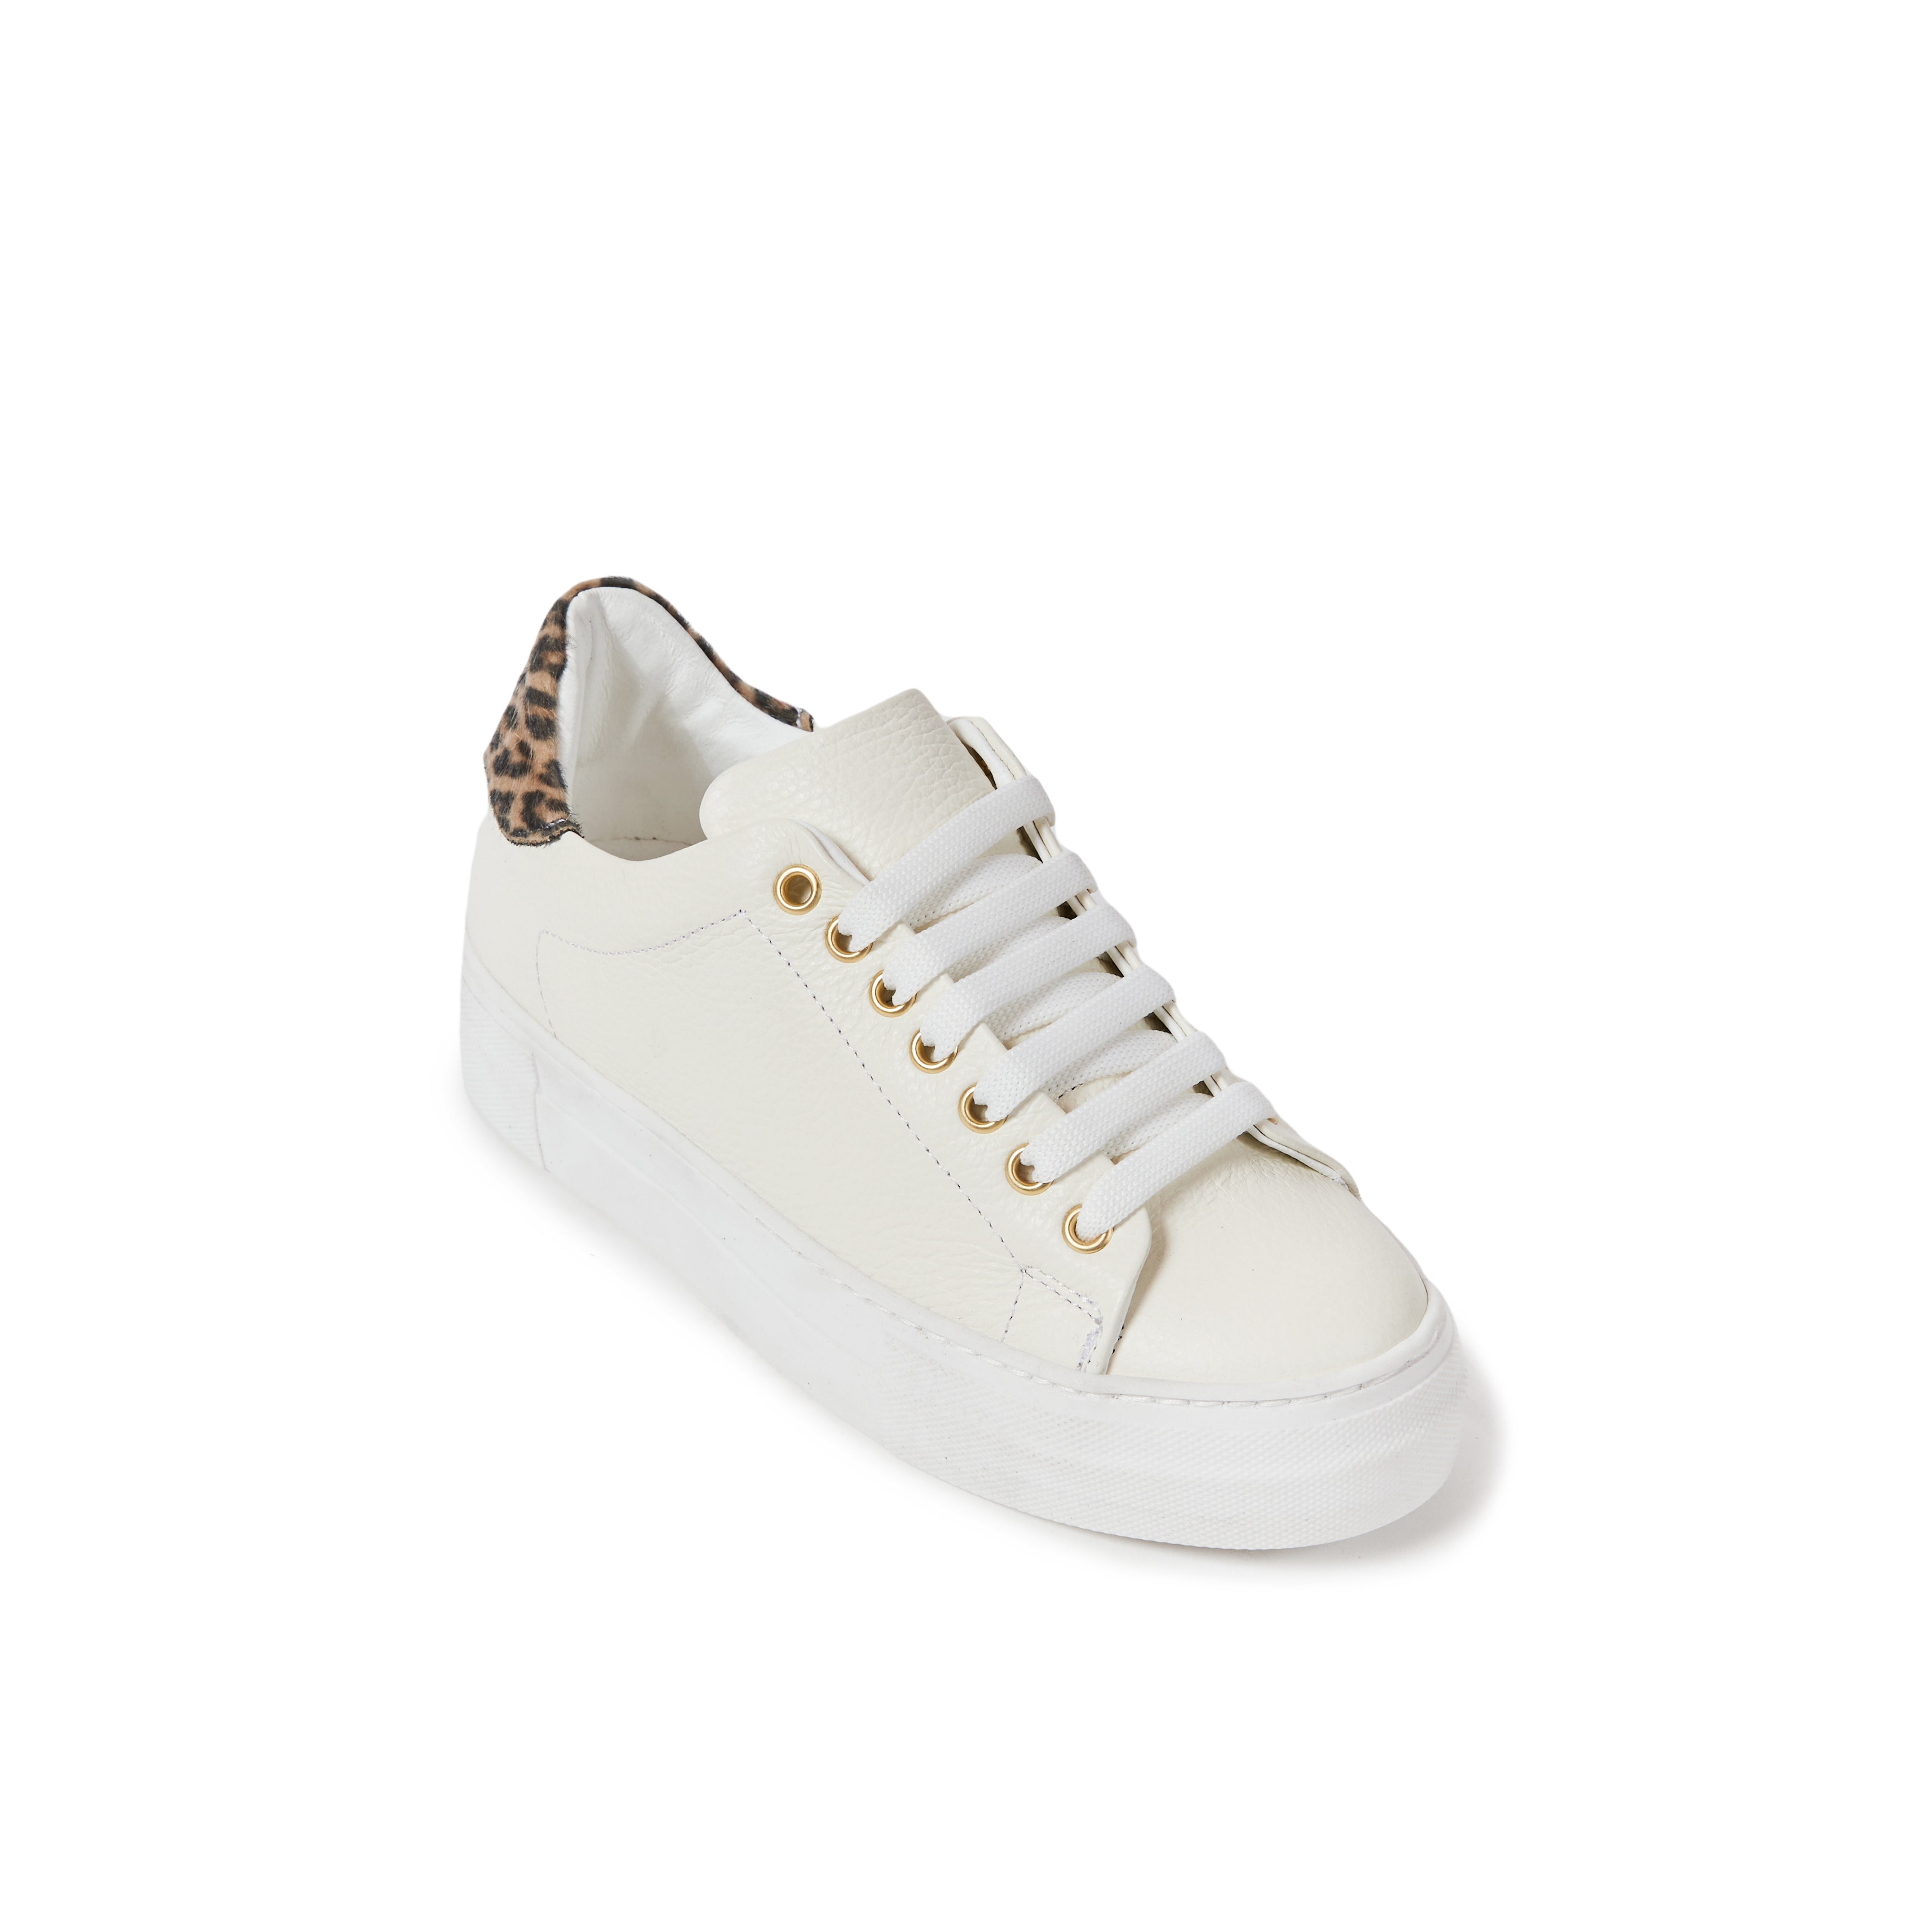 Sneaker cream white and leopard